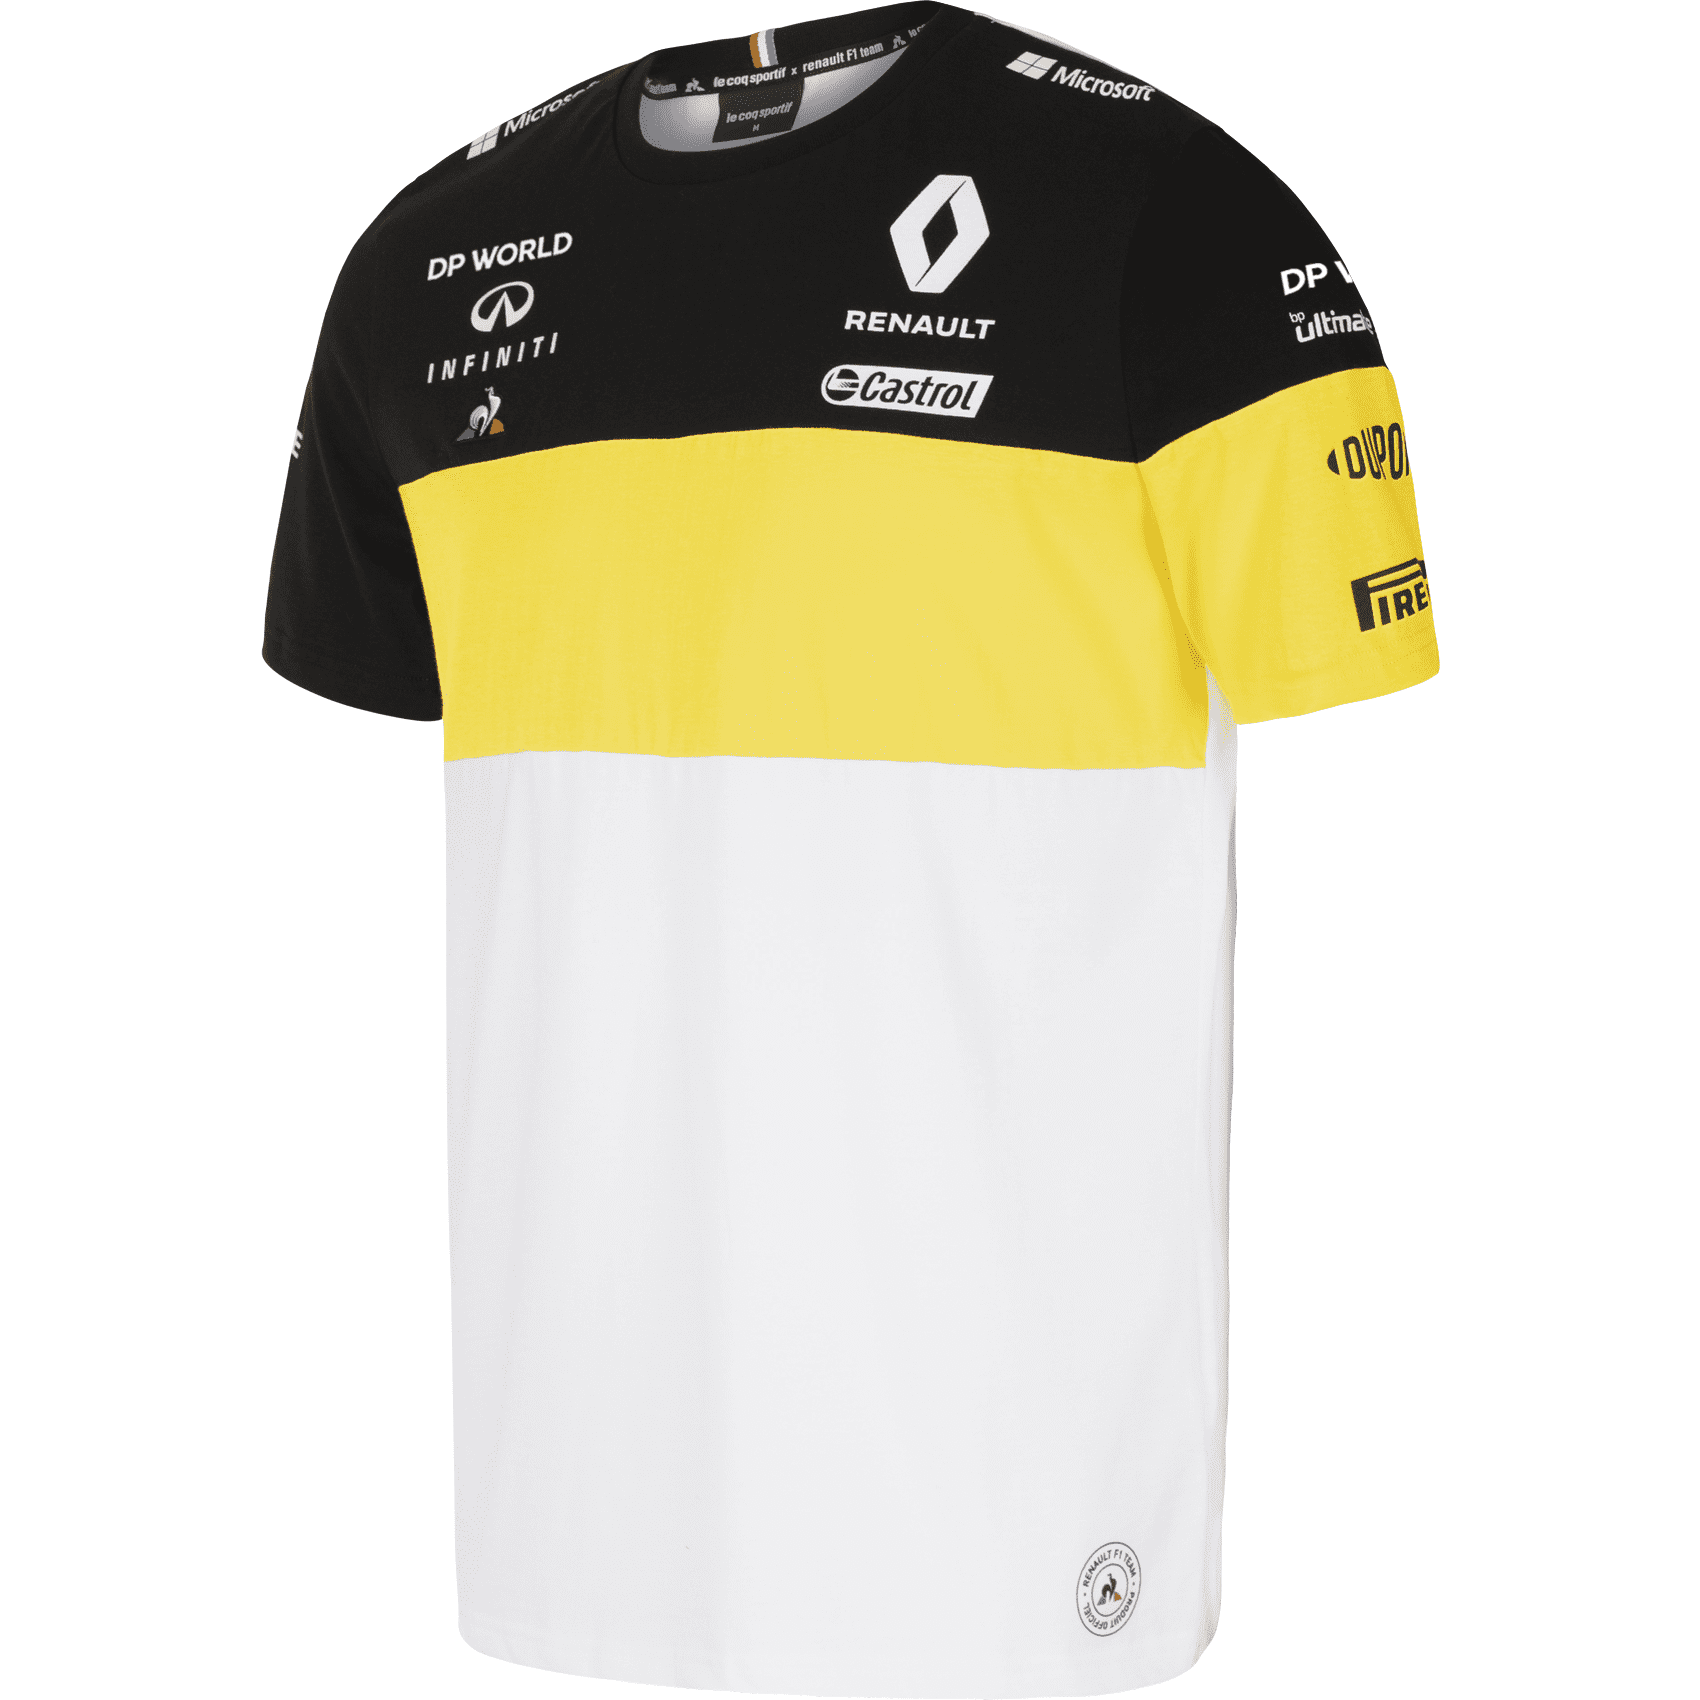 Of anders Horizontaal eenzaam Renault F1 2020 Men's Team T-Shirt White - Walmart.com